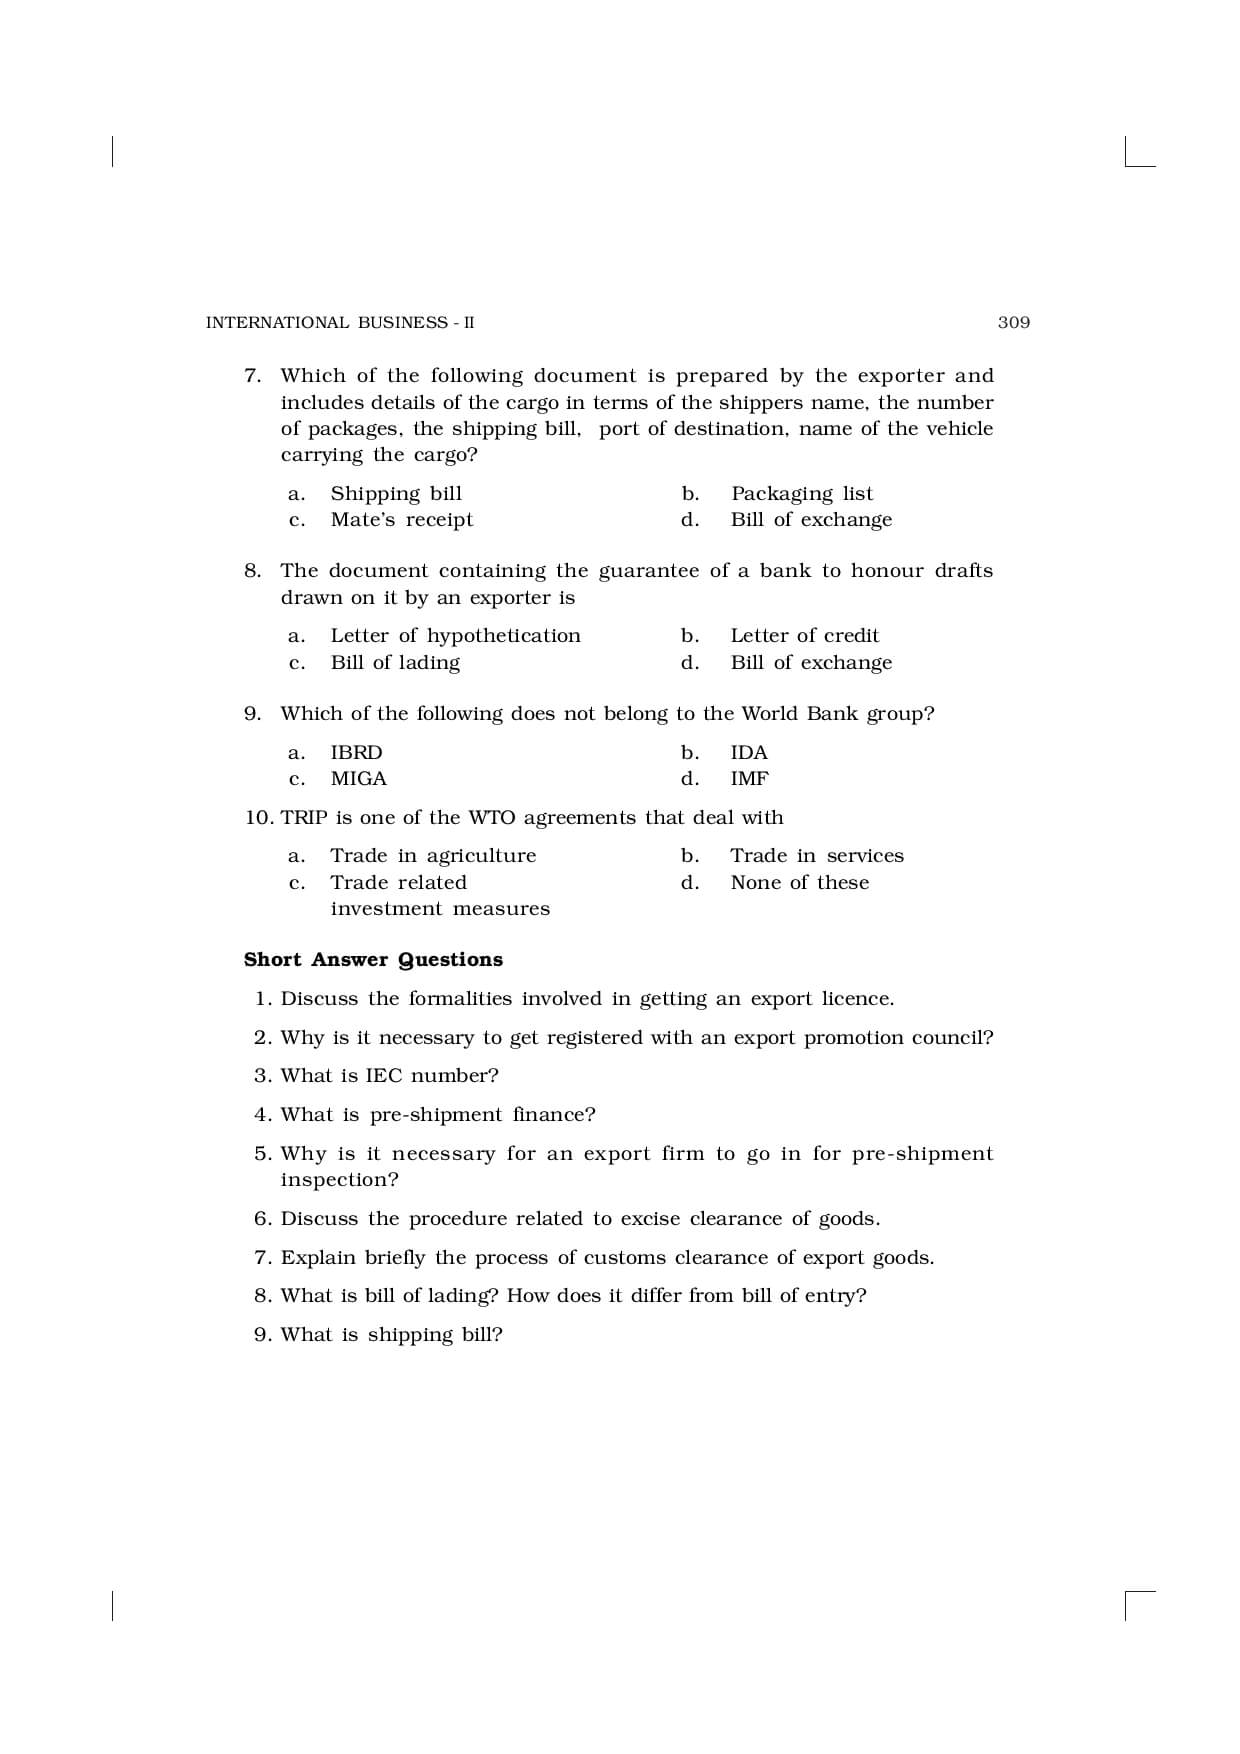 class 11 business studies case study questions pdf